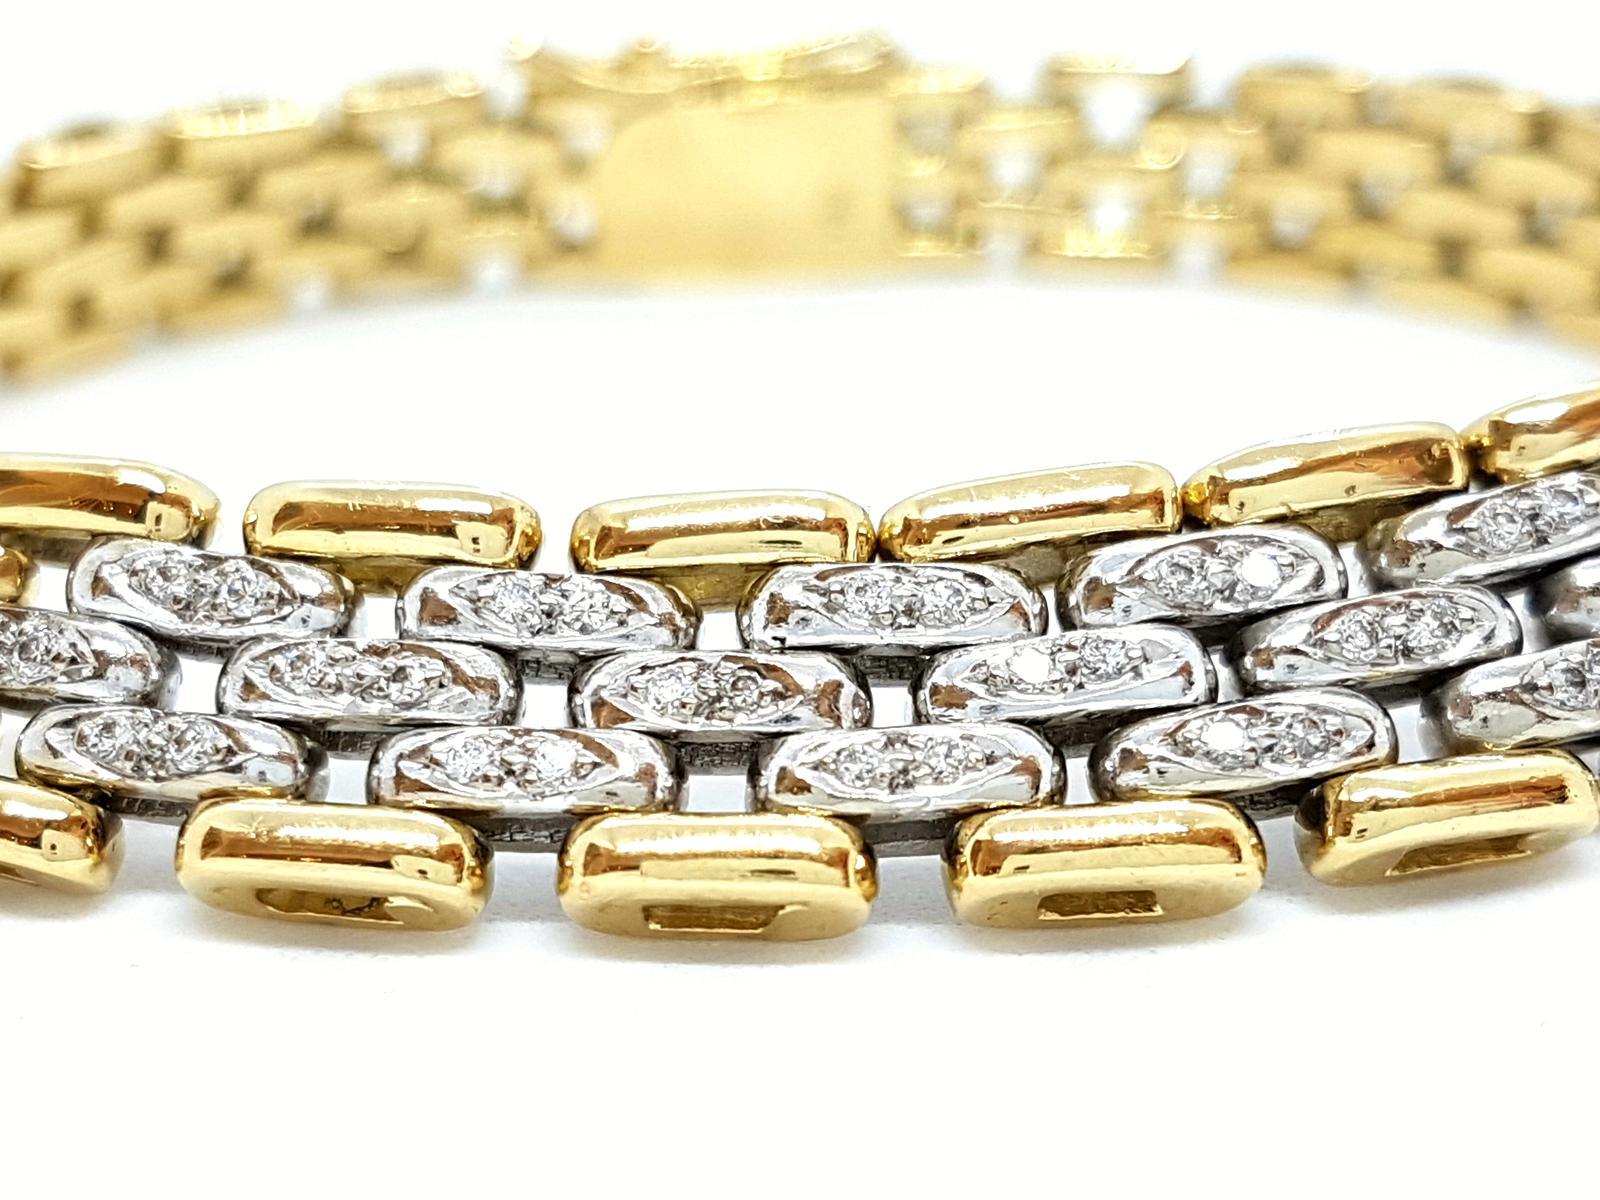 Bracelet bicolore en or jaune et blanc 750 millièmes (18 carats). pad 38 de diamants à environ 0.19 ct total métallisé Les maillons sont en or blanc. largeur : entre 1 cm (partie pavée de diamants) et 0.8 cm ( côté fermoir). longueur : 19 cm.